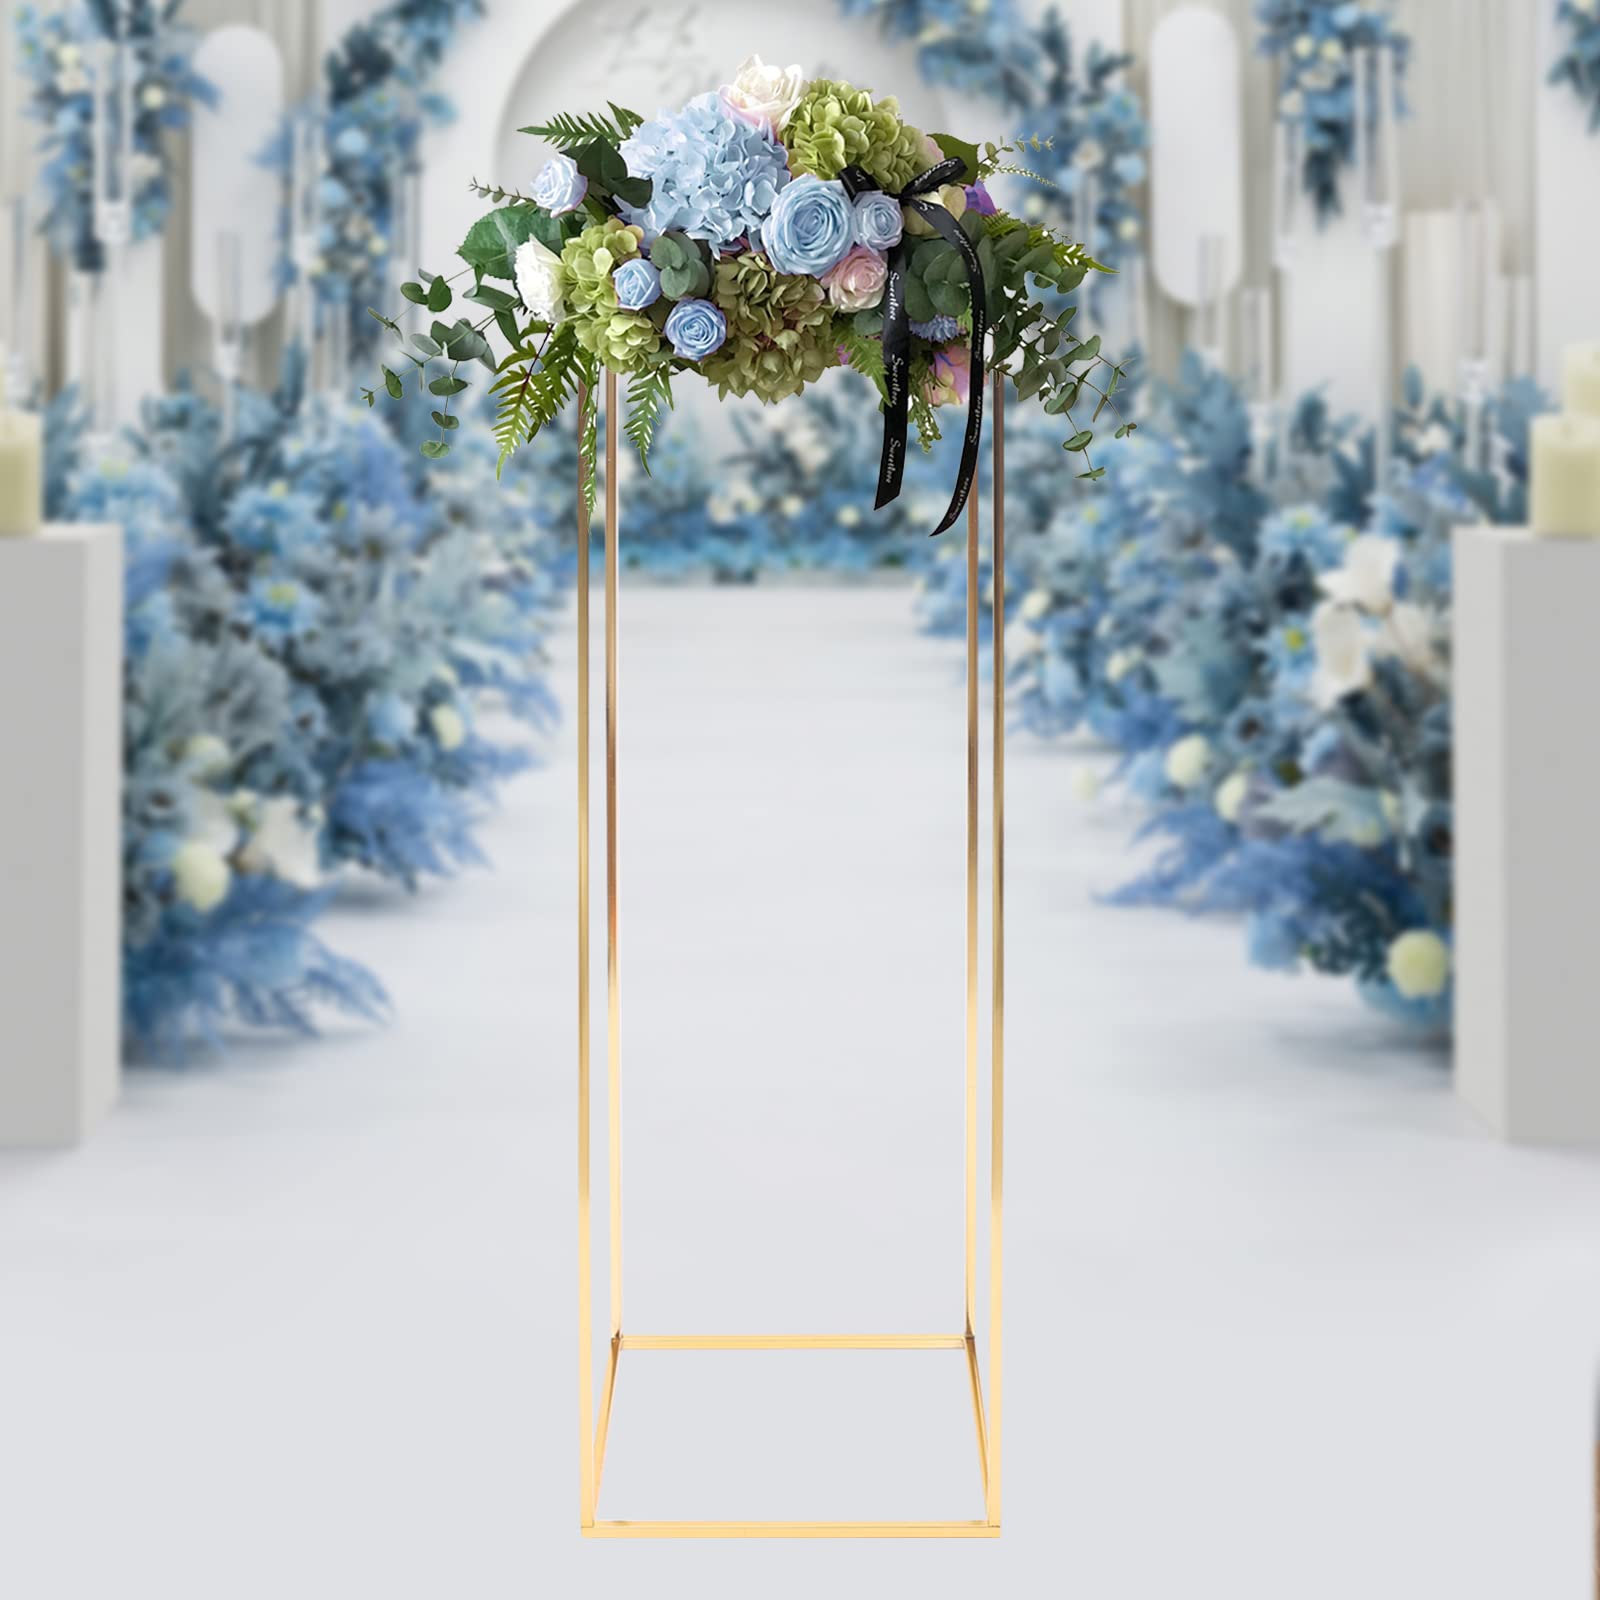 Support de plantes en métal - Support de décoration de mariage - Doré moderne - Pour décoration de fête - Hauteur : 100 cm